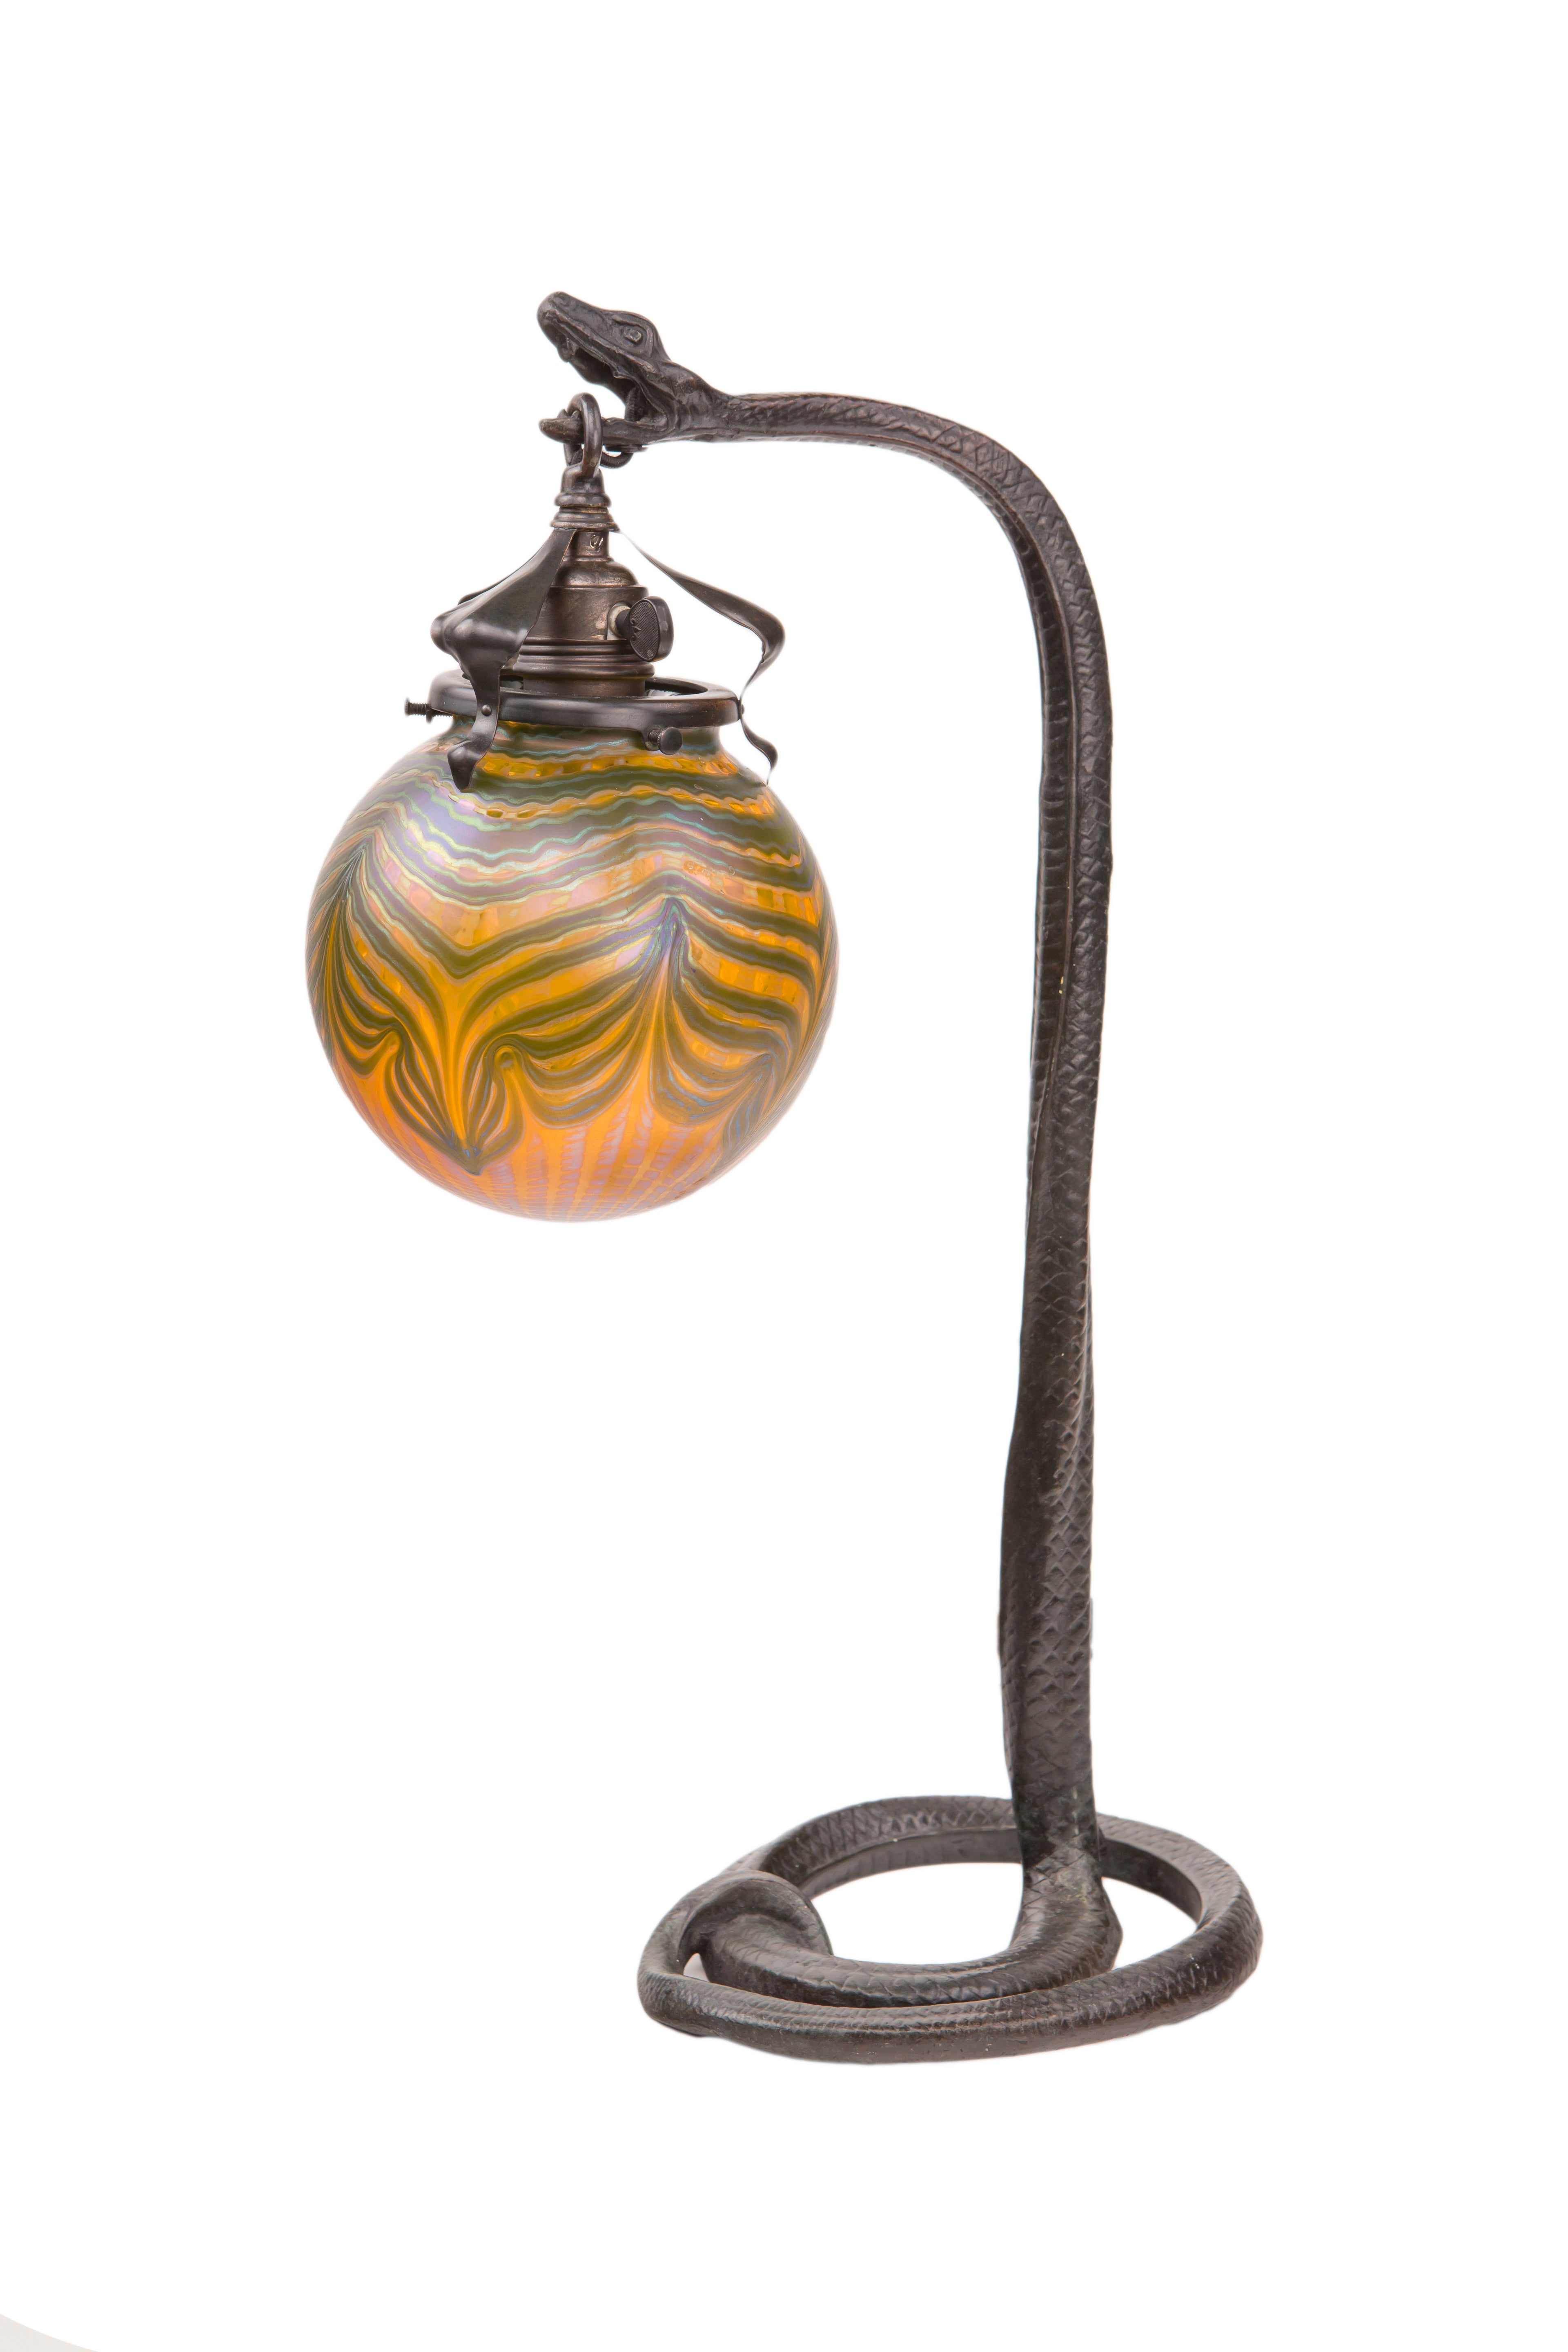 Austrian Art Nouveau Snake Table Lamp